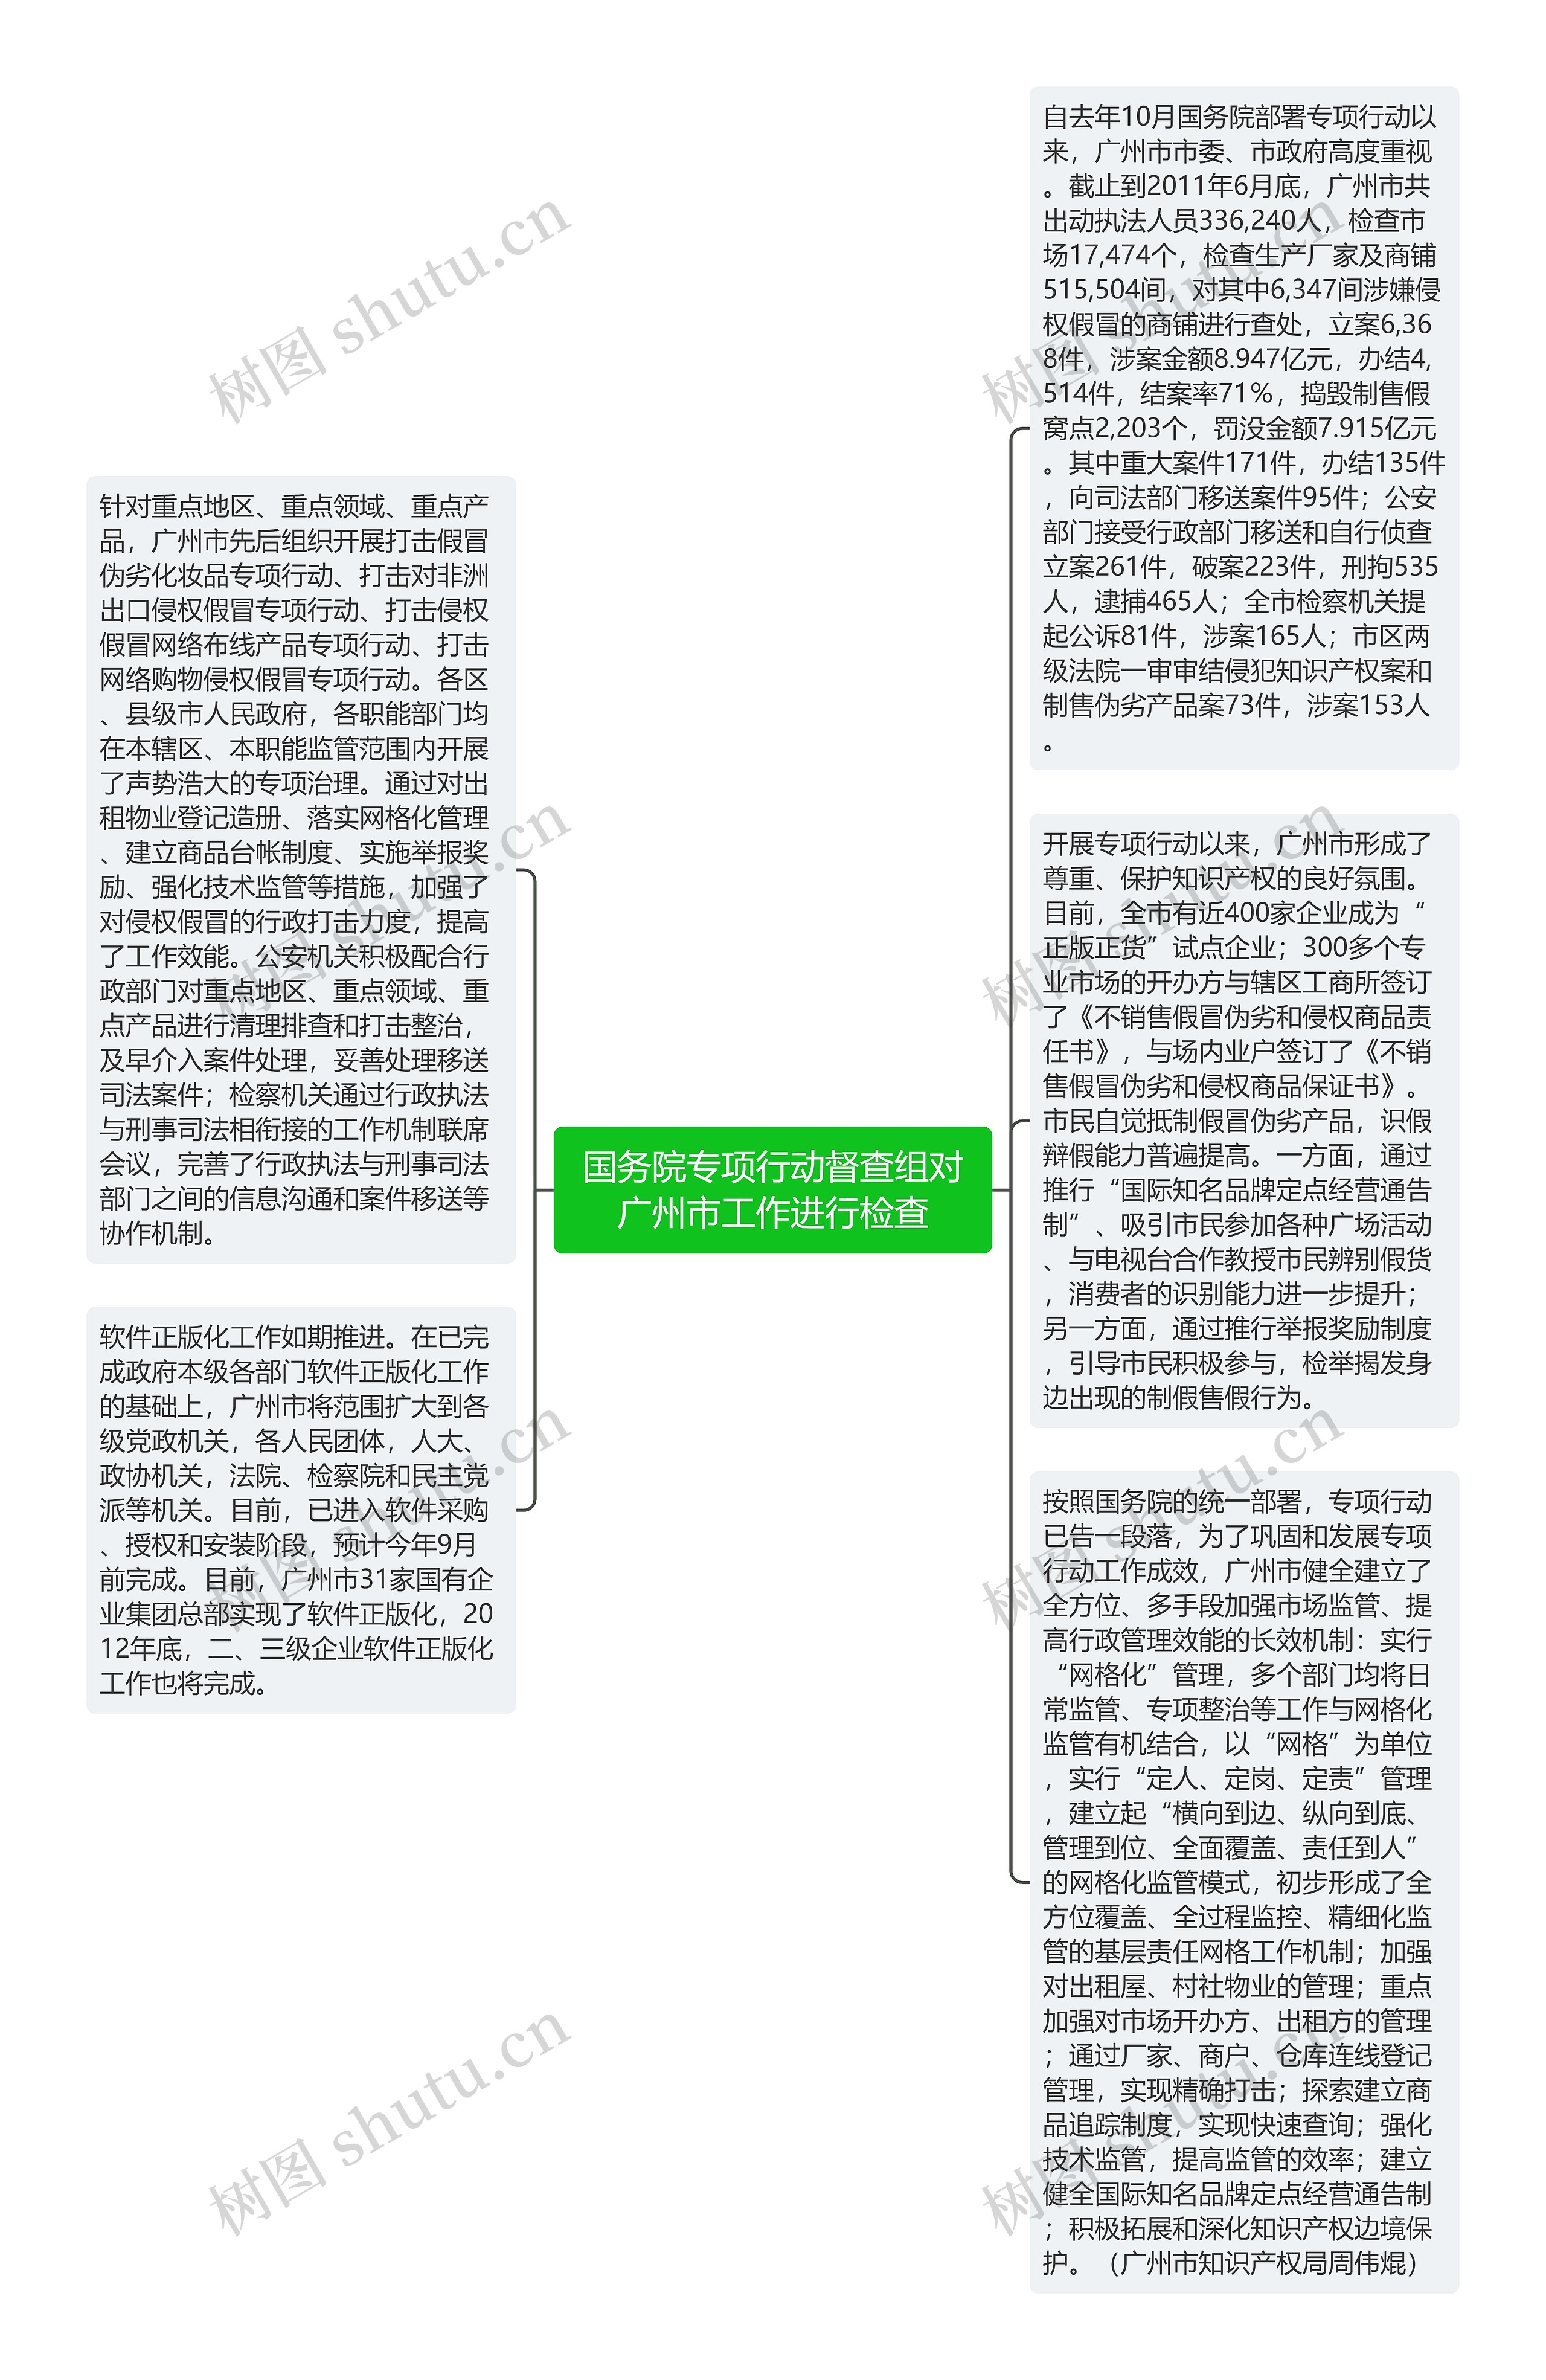 国务院专项行动督查组对广州市工作进行检查思维导图